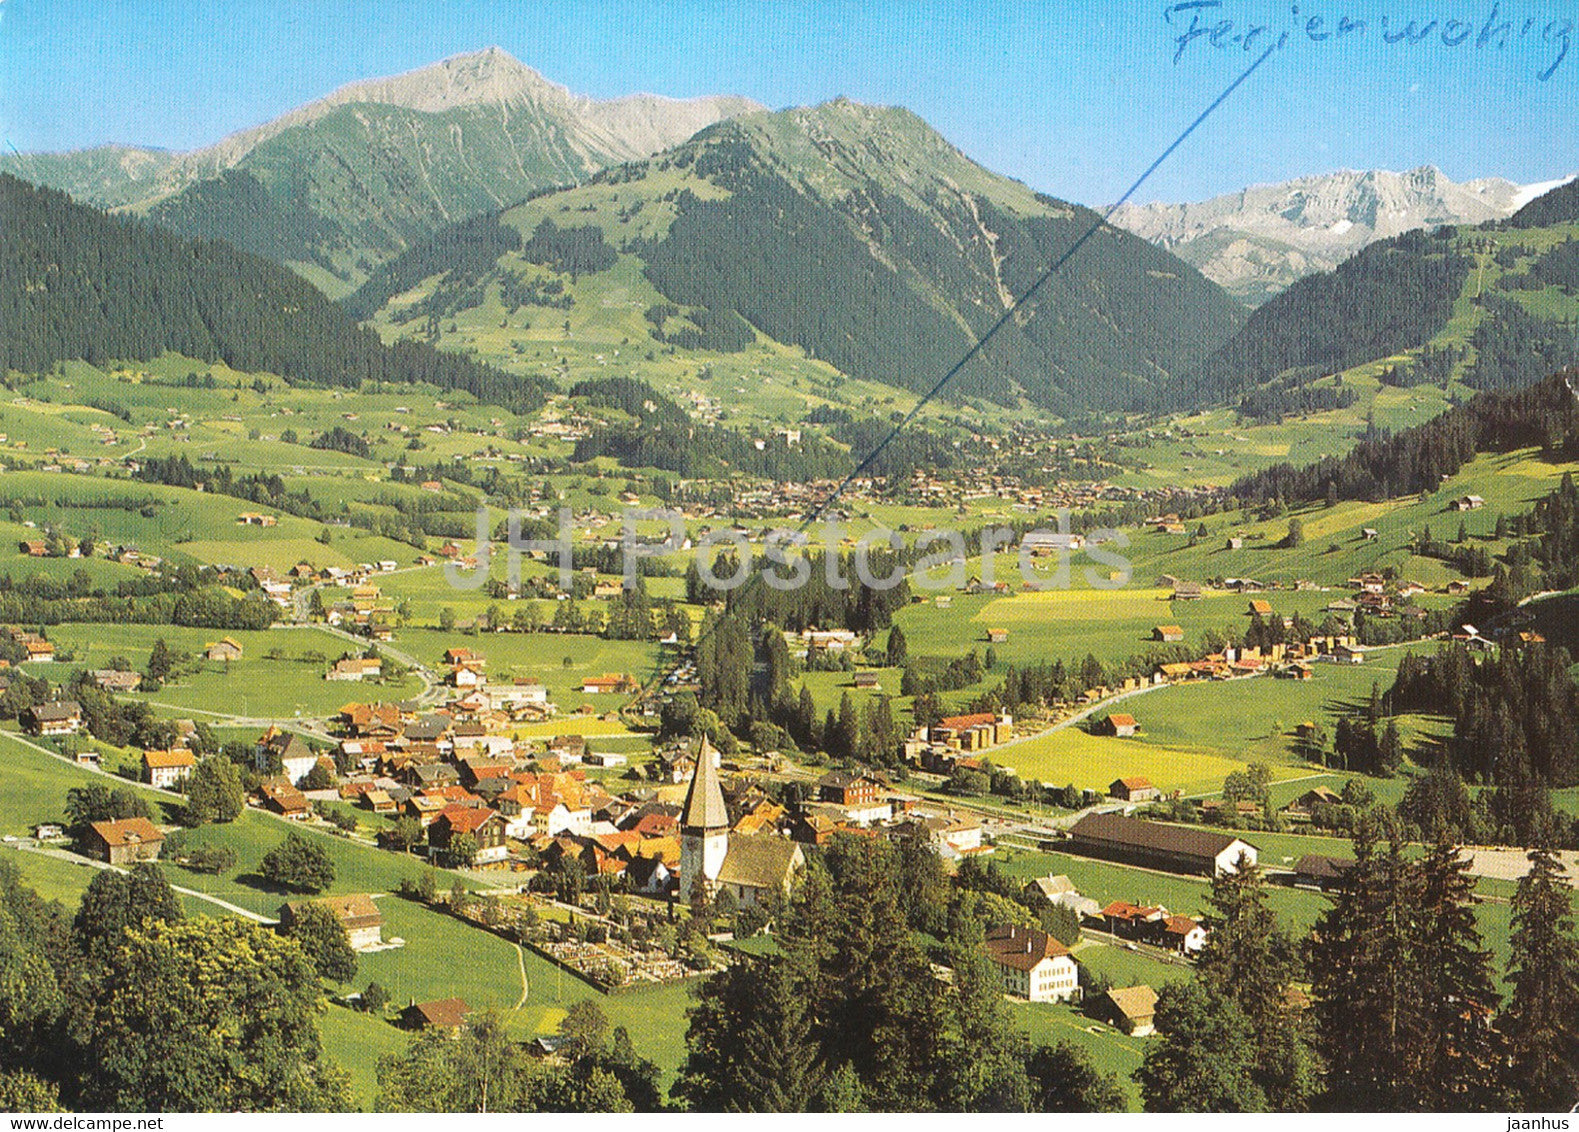 Saanen und Gstaad - Gifferhorn und Wasserngrat - 138 - 1975 - Switzerland - used - JH Postcards